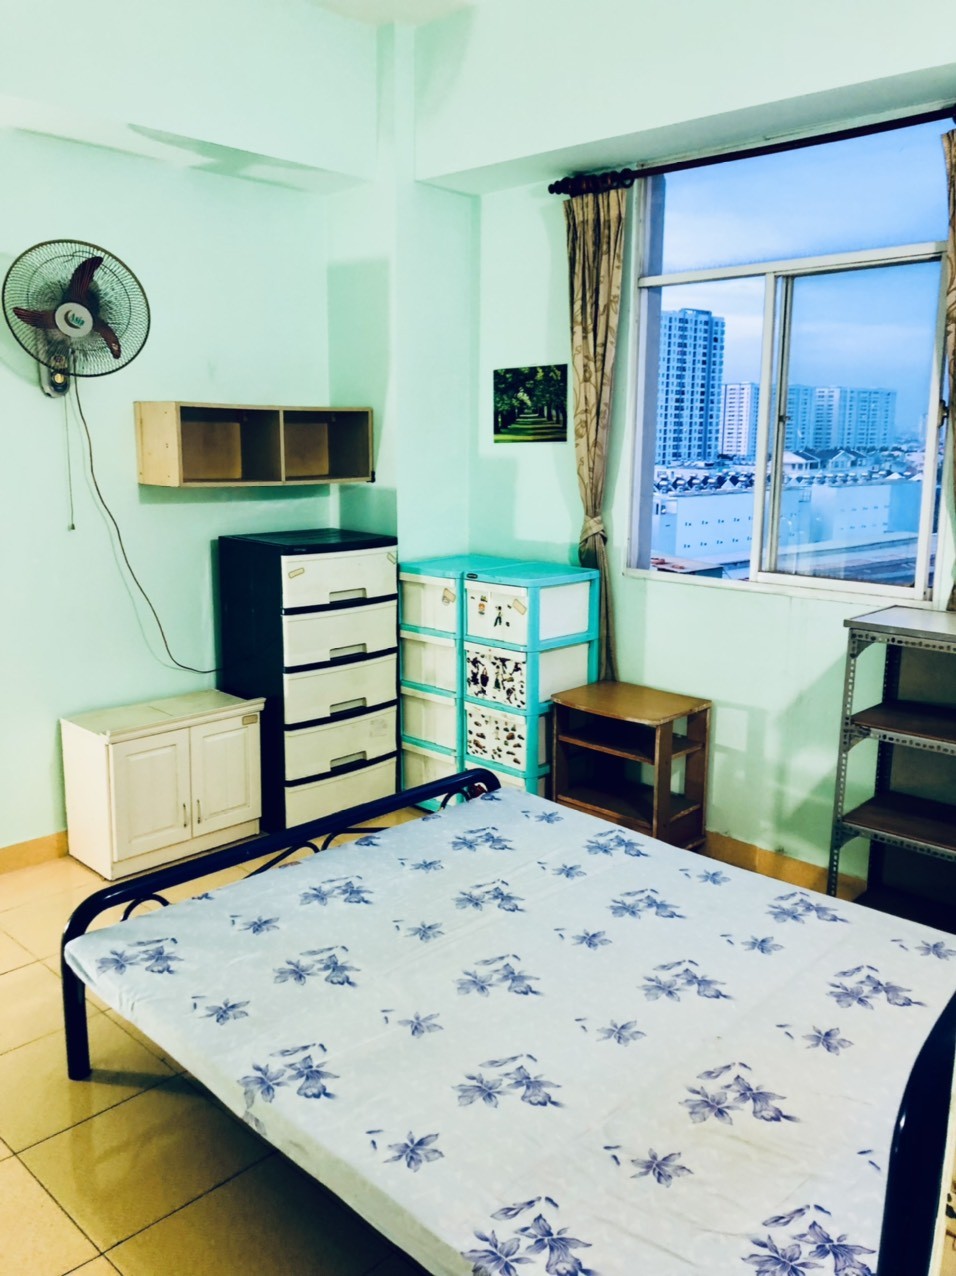 Tìm một bạn nam ở ghép trong chung cư 2 phòng ngủ tại Bình Tân. Liên hệ: 0879299593